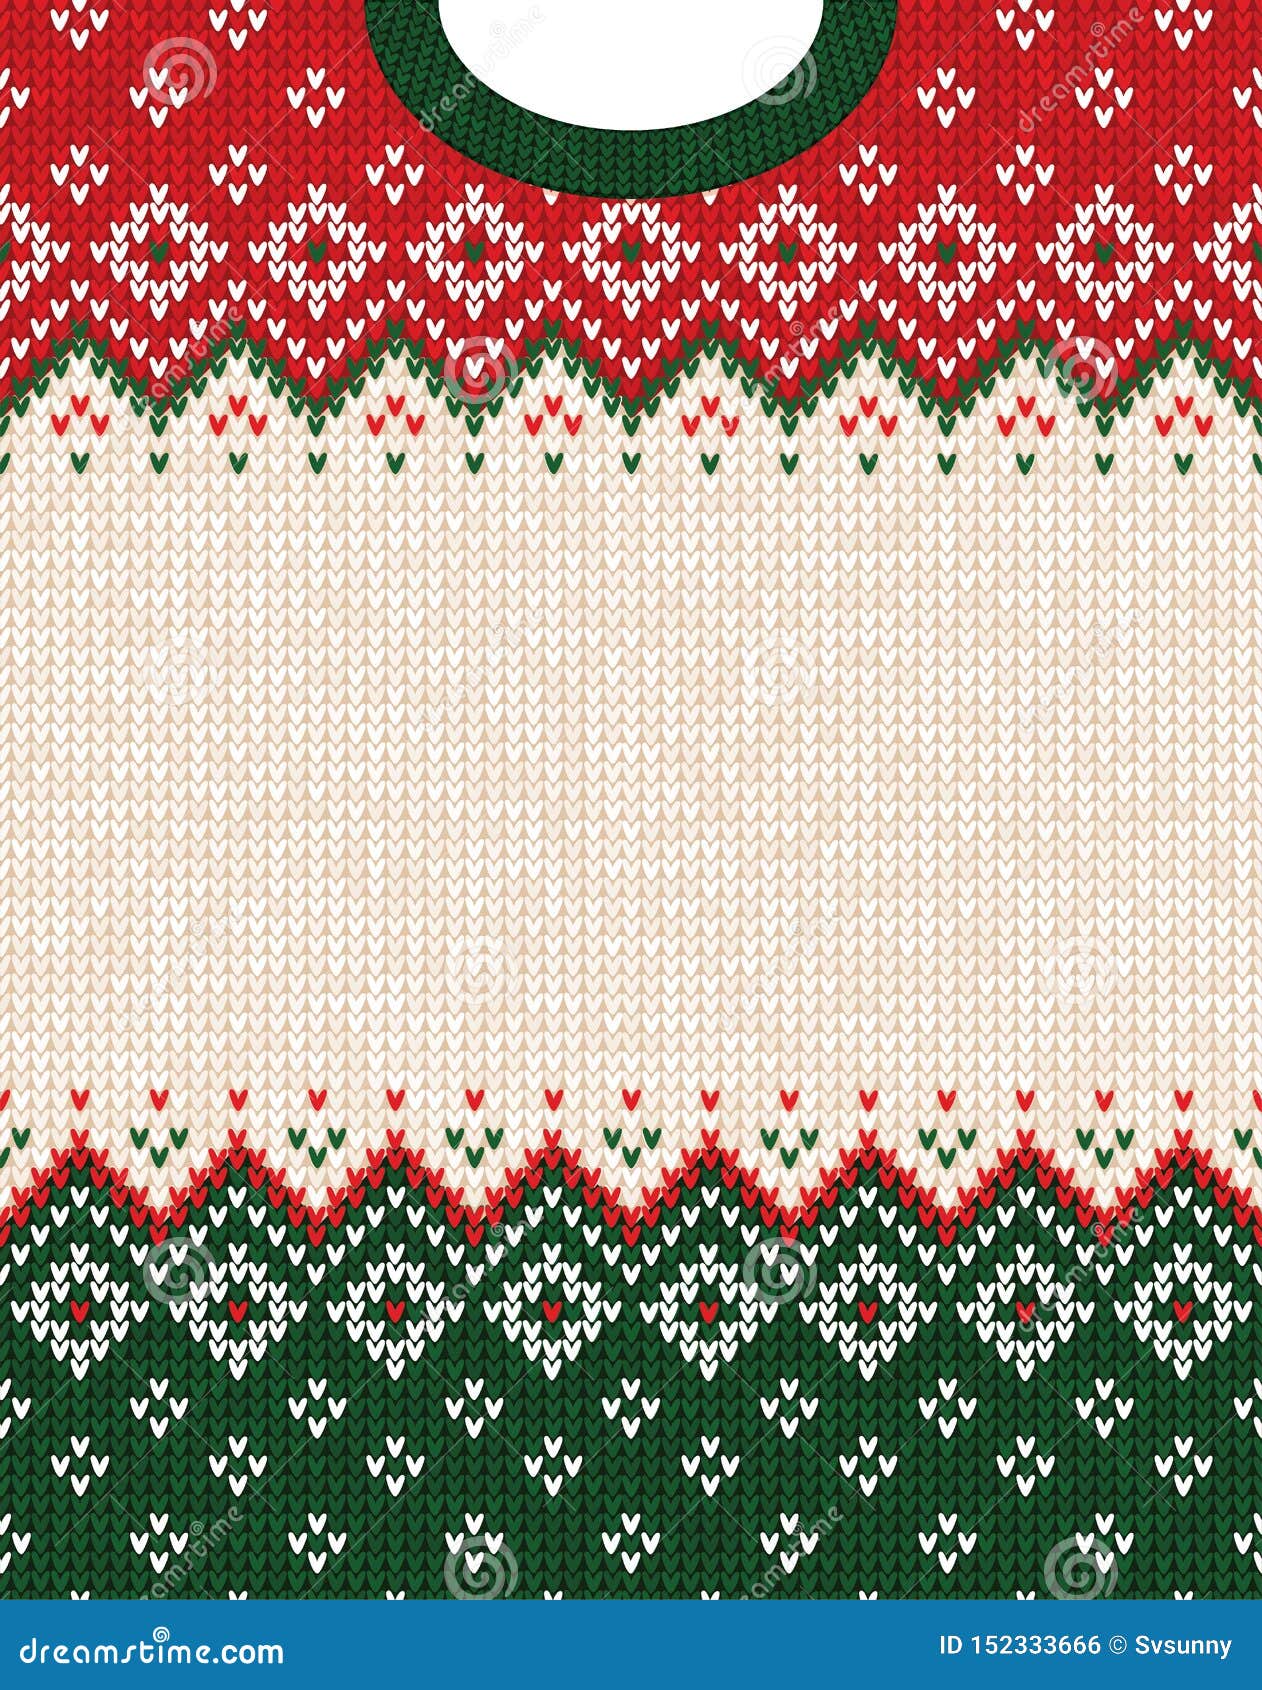 Crochet Ugly Sweater sẽ làm nổi bật phong cách của bạn trong thời gian lễ hội. Áo len được đan thủ công với nhiều màu sắc sẽ mang đến cho bạn sự tươi mới và độc đáo. Hãy mặc áo len Crochet này và truyền tải cho mọi người cảm giác vui tươi trong mùa lễ hội.